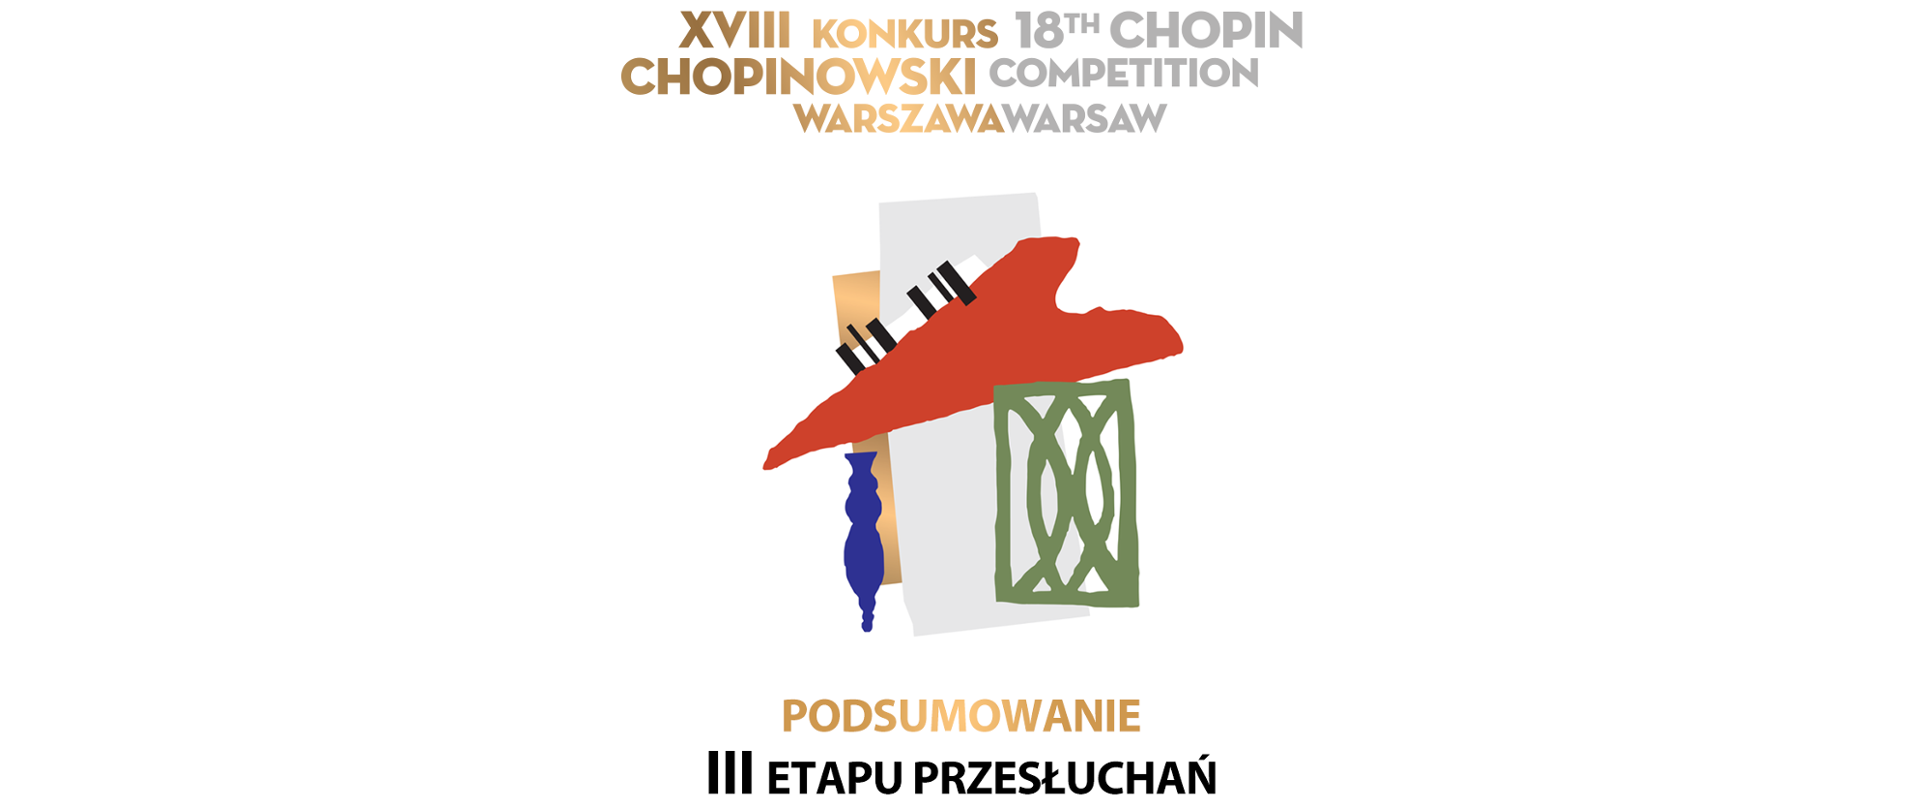 Finaliści XVIII Konkursu Chopinowskiego – znamy wyniki III etapu przesłuchań!